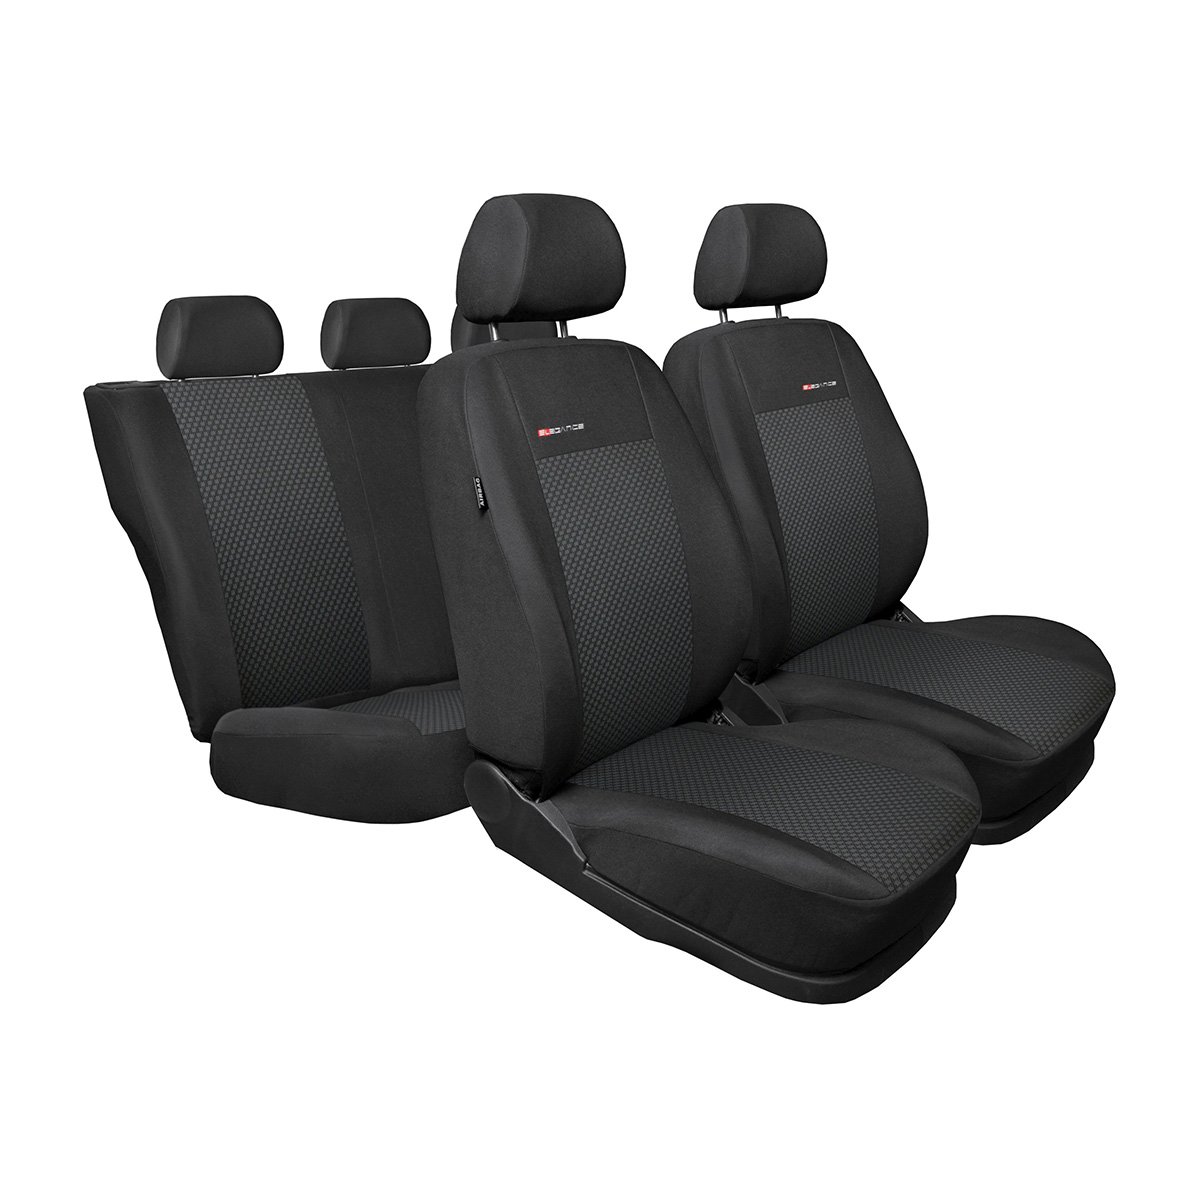 Mossa - Maßgeschneiderte Sitzbezüge Auto kompatibel mit Seat Altea MPV (2004-2015) - Autositzbezüge Schonbezüge für Autositze - E3 von Mossa